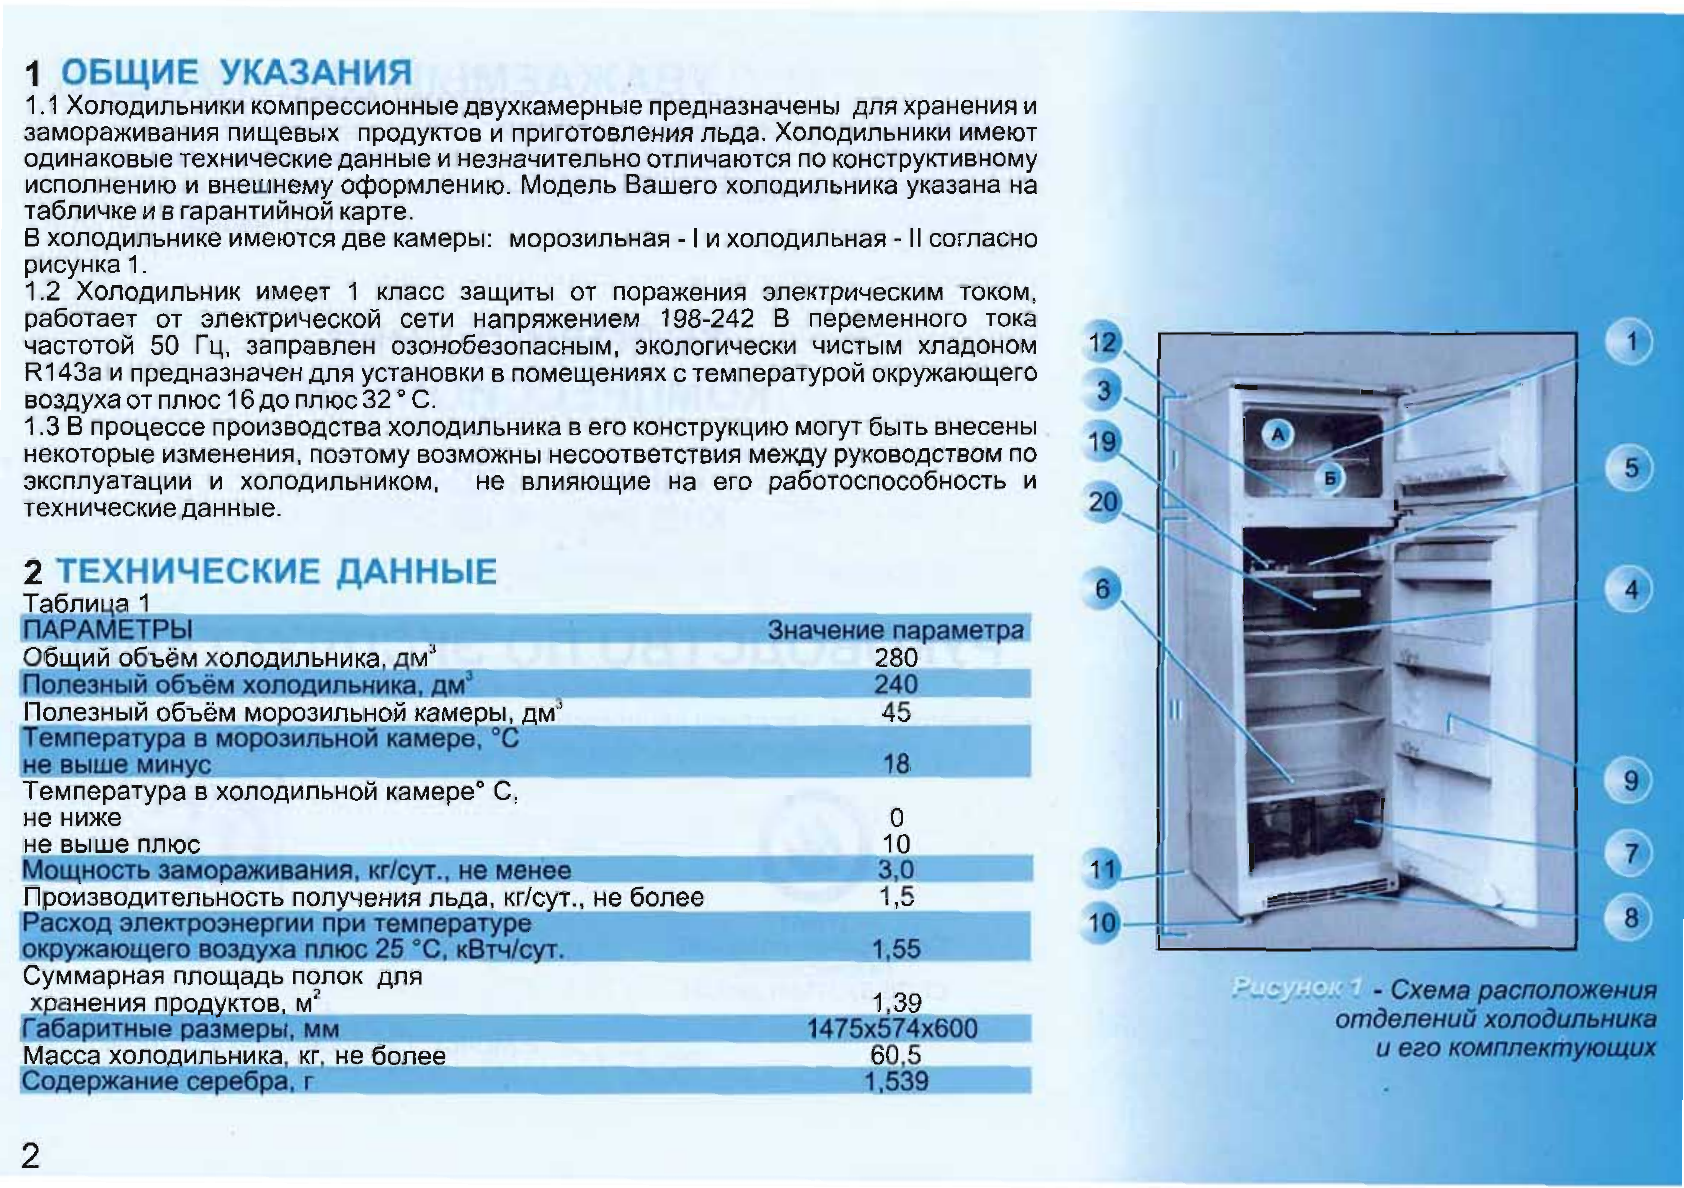 Основные правила эксплуатации морозильной камеры при минусовой температуре, полезные рекомендации